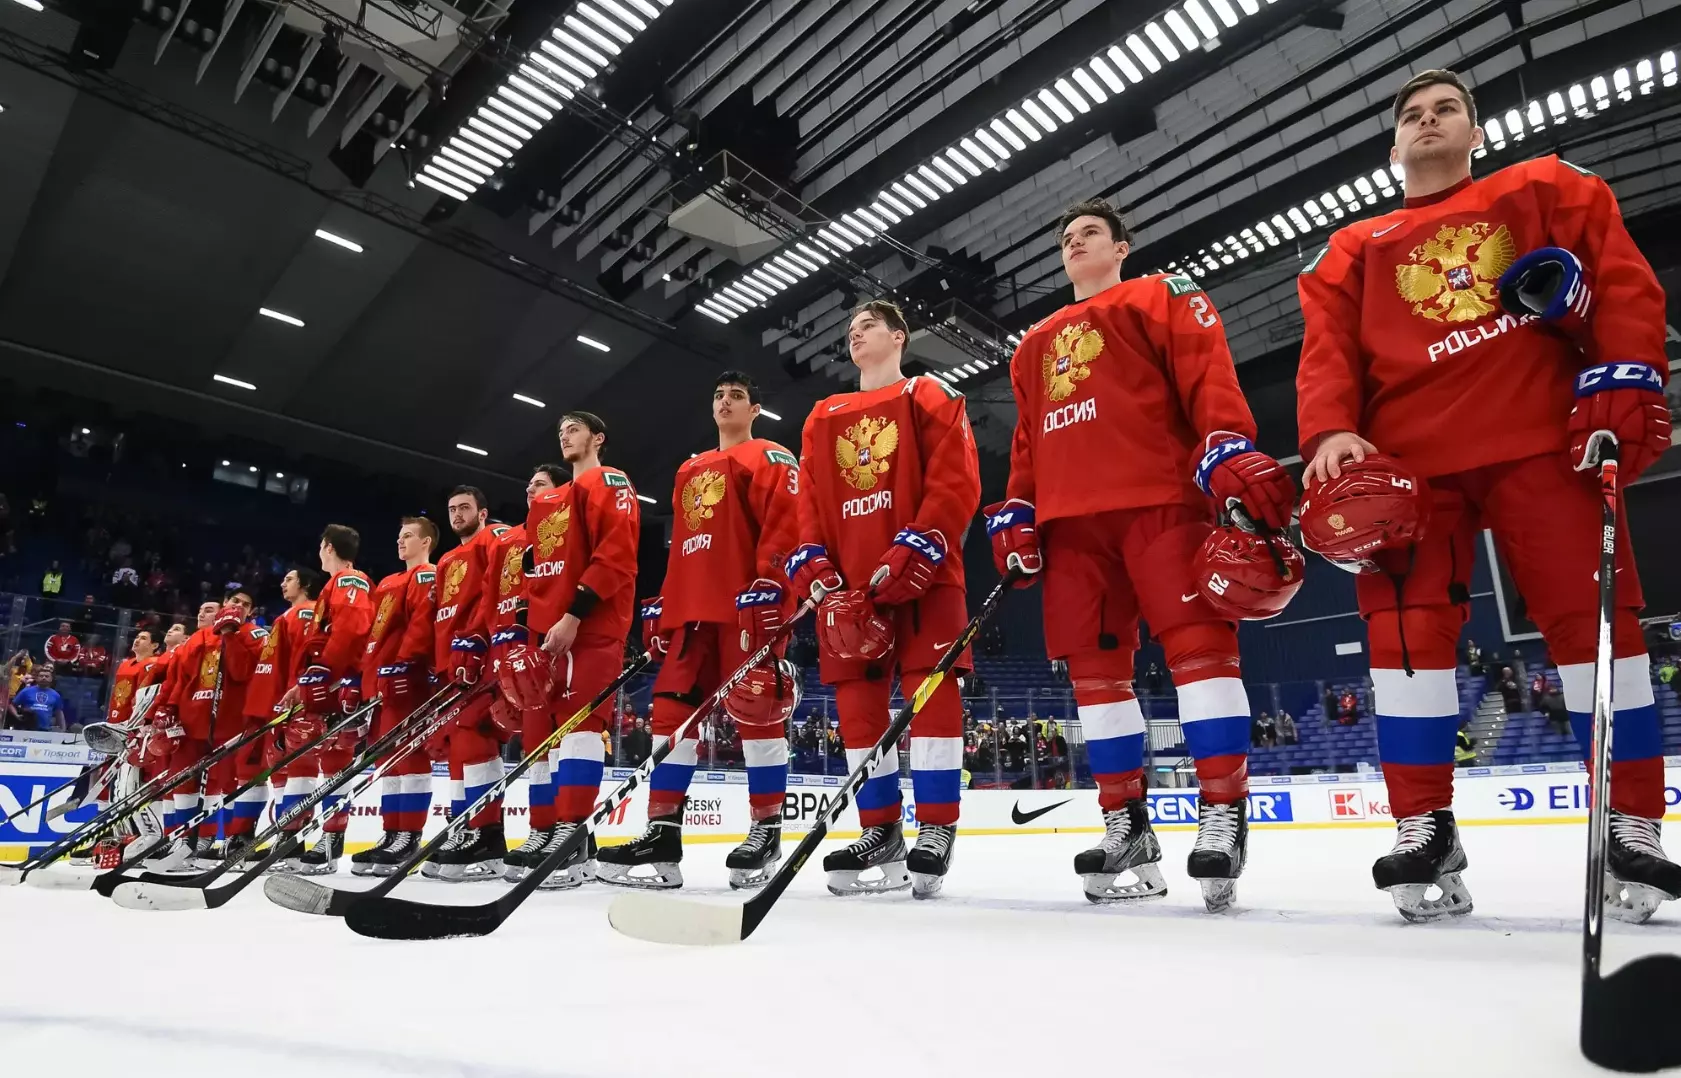 Skandal in der IIHF: Russen "abgesetzt", aber sie gewinnen